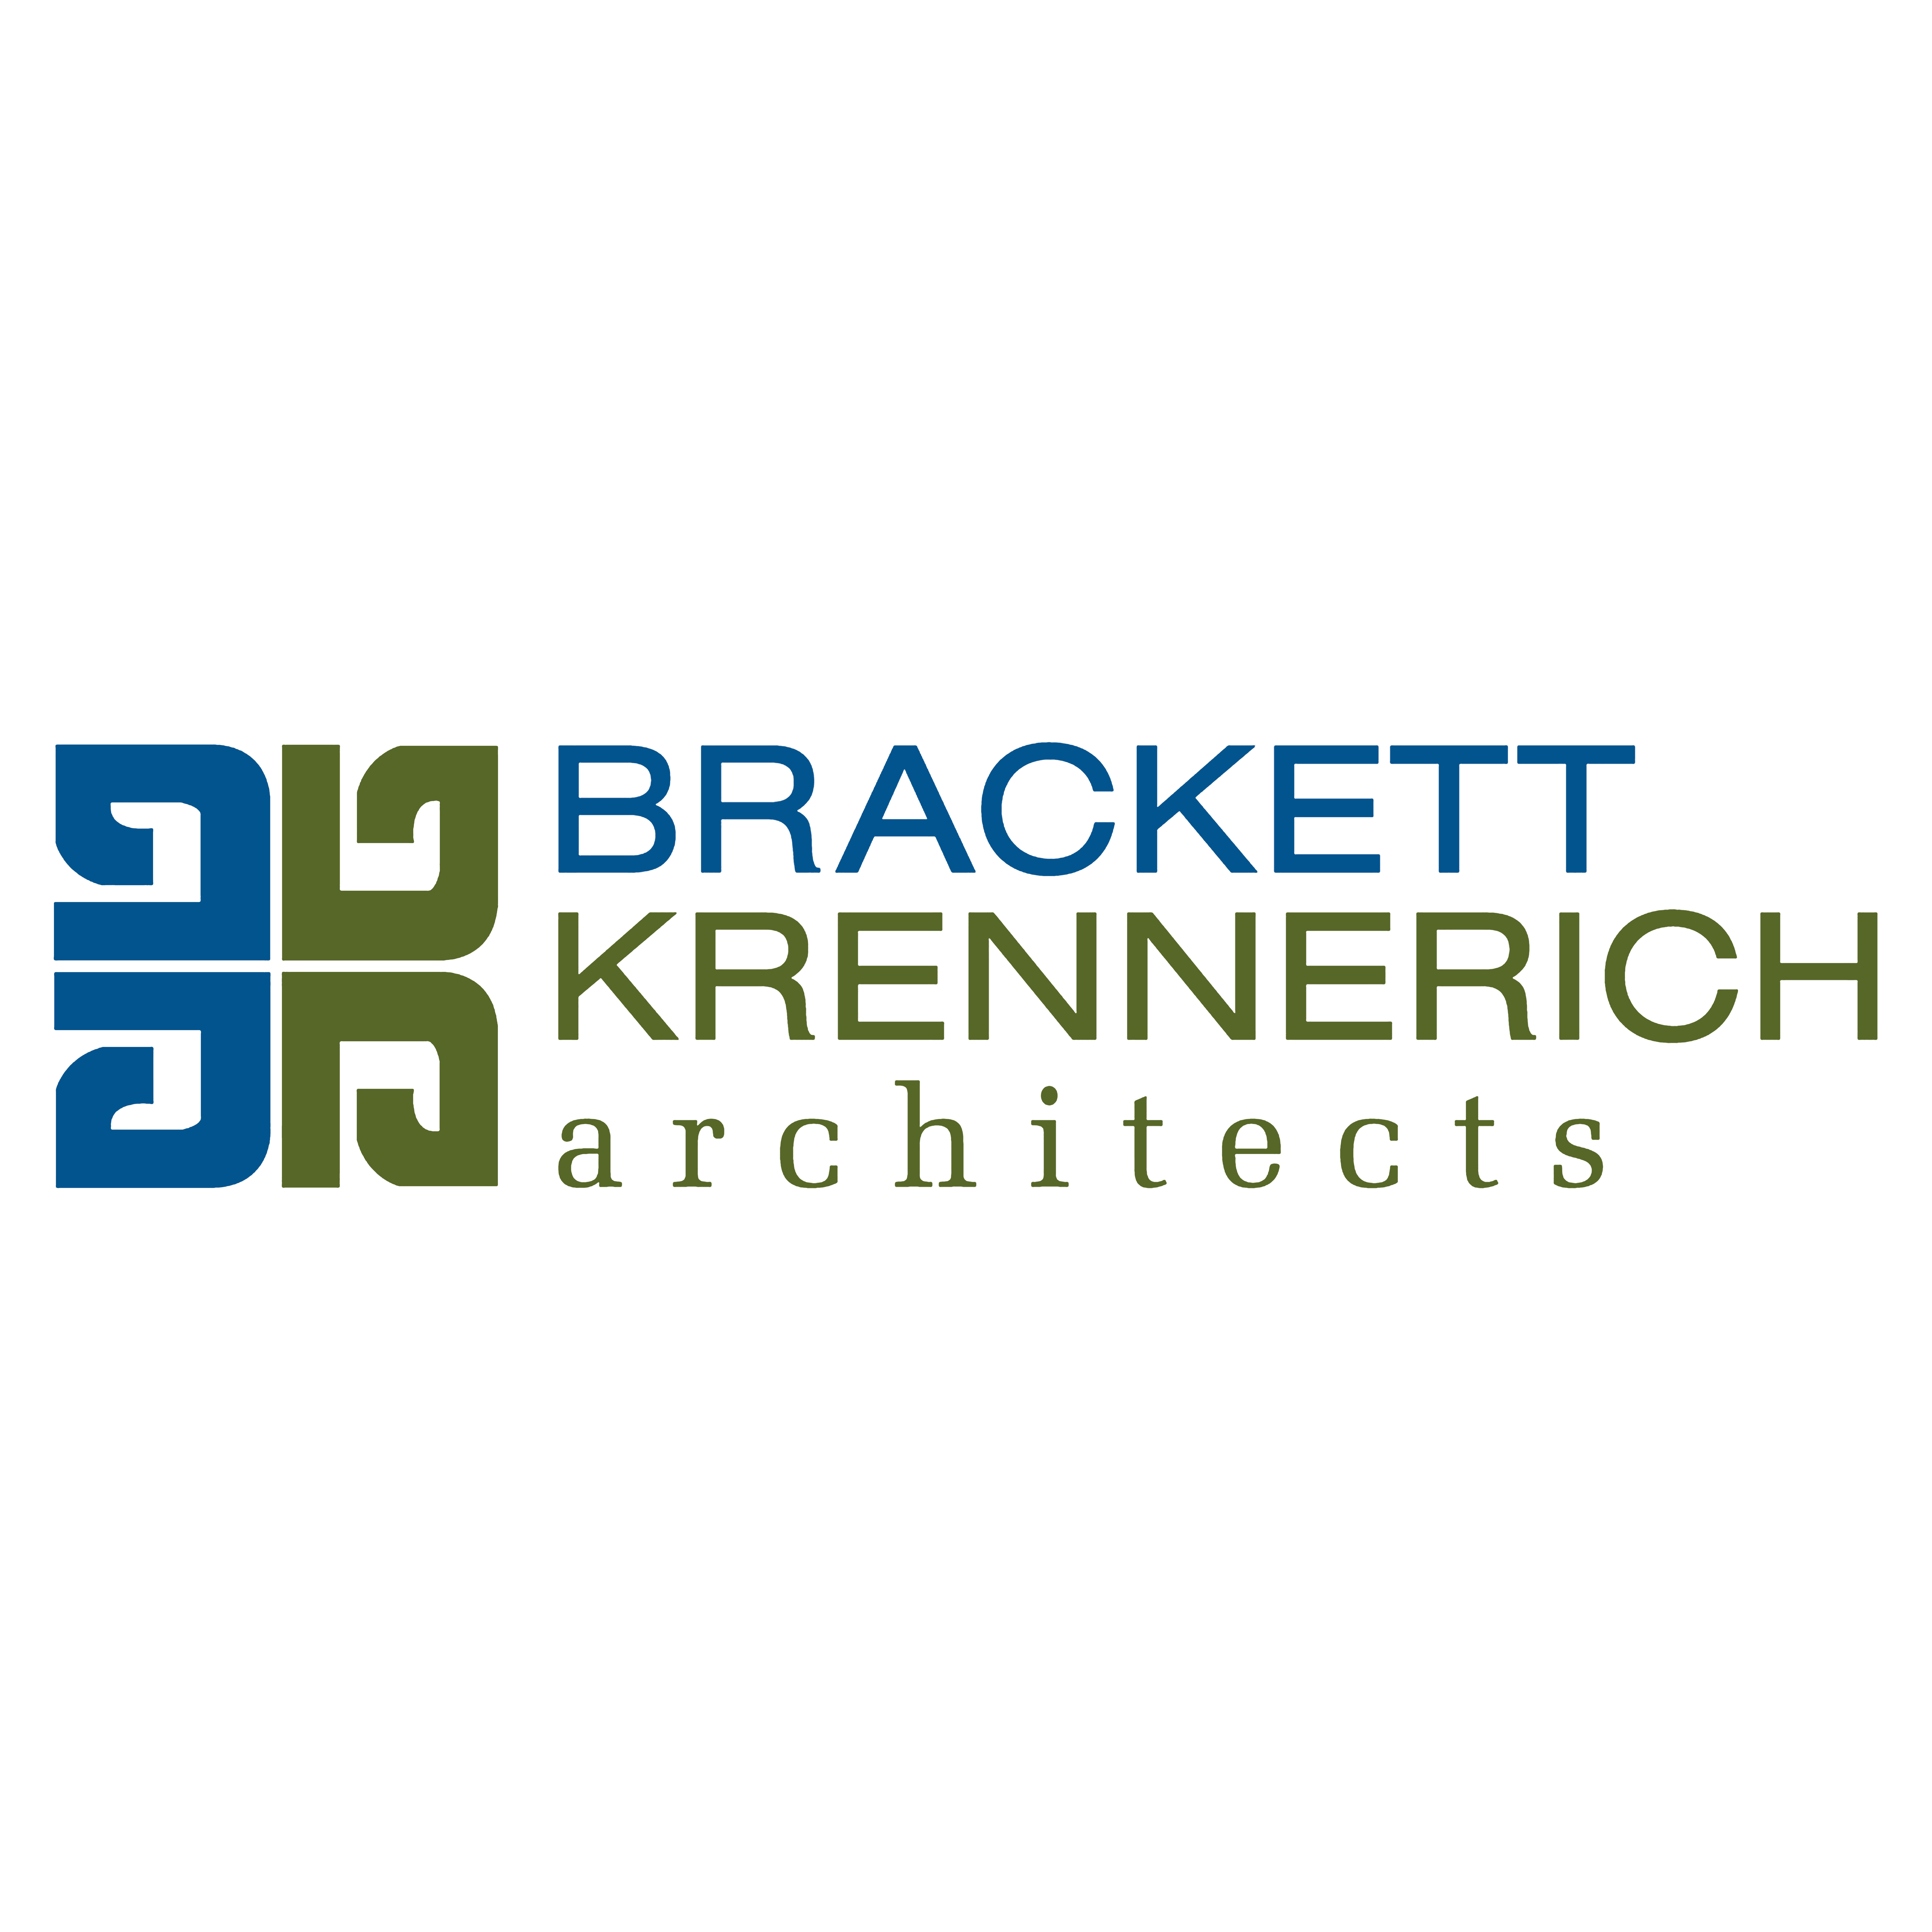 Brackett-Krennerich & Associates - Jonesboro, AR 72401 - (870)932-0571 | ShowMeLocal.com